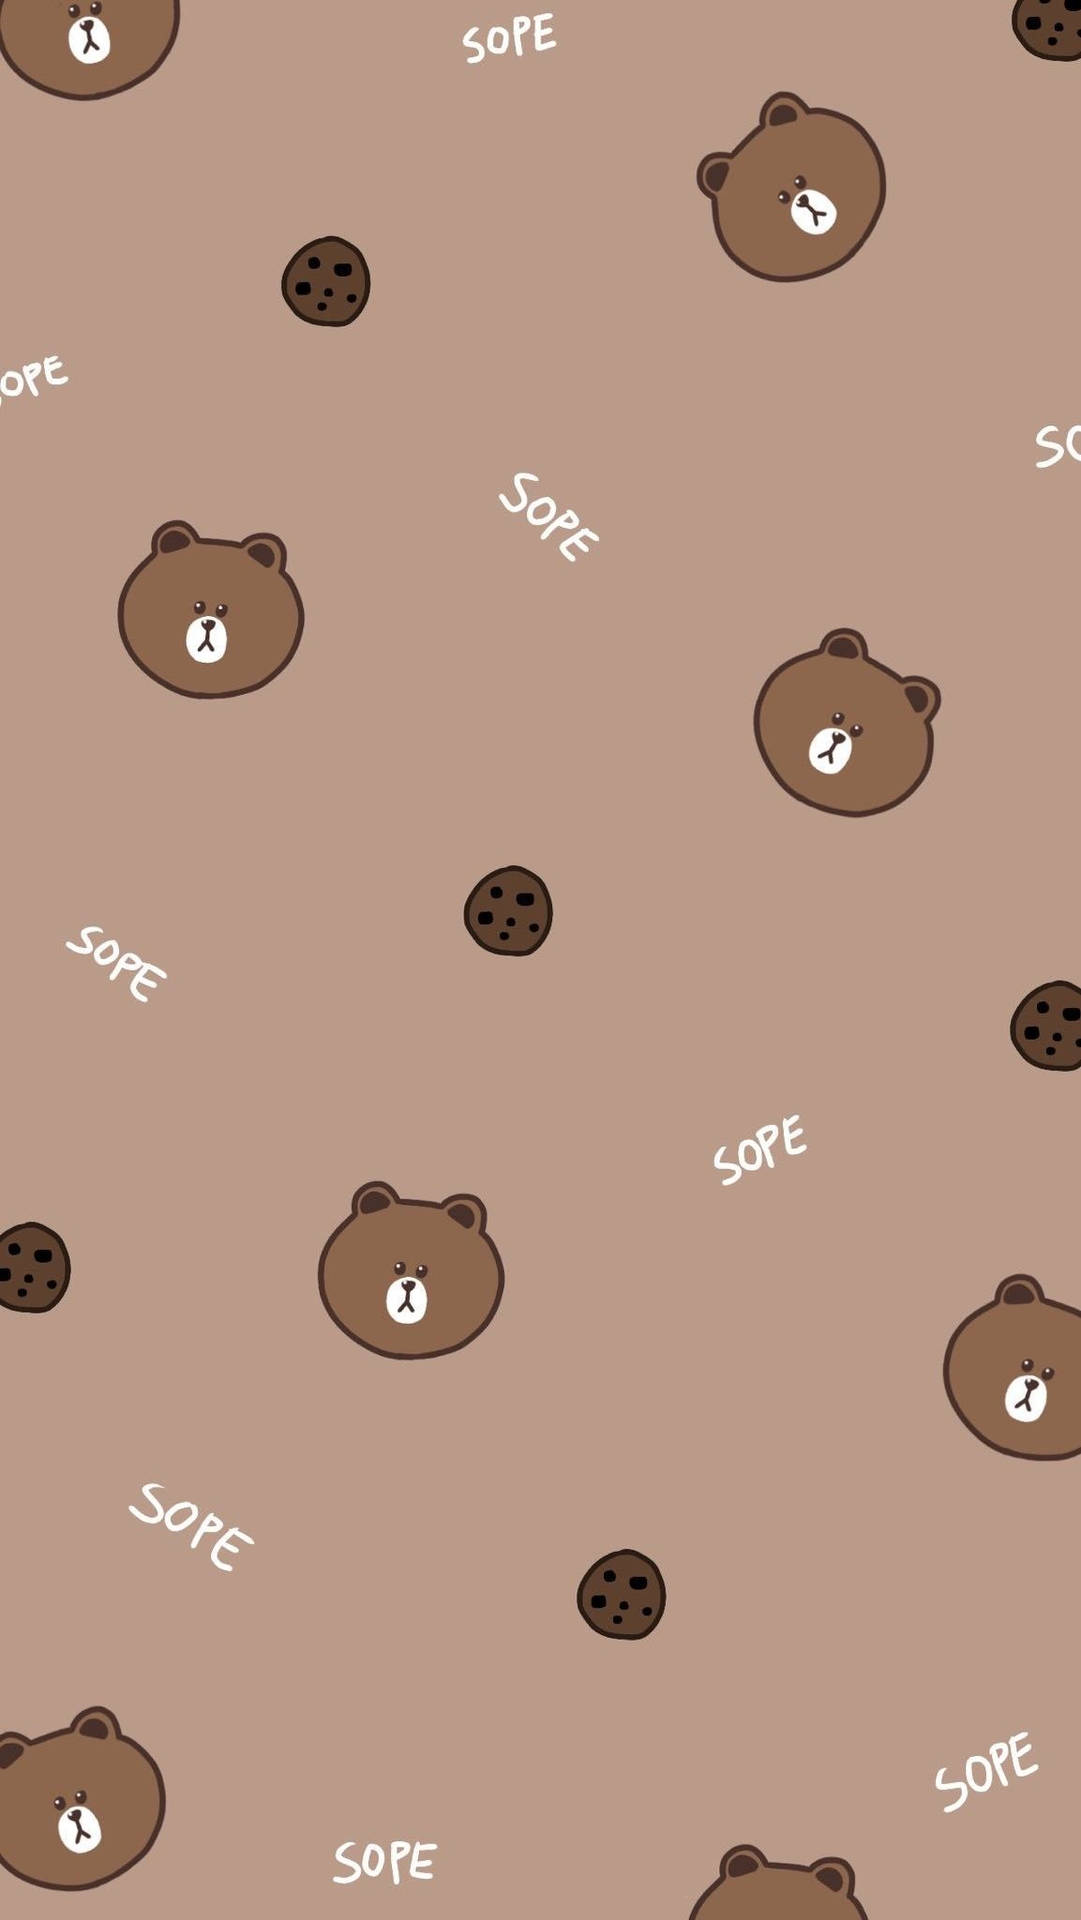 Cute Bear Sope Background